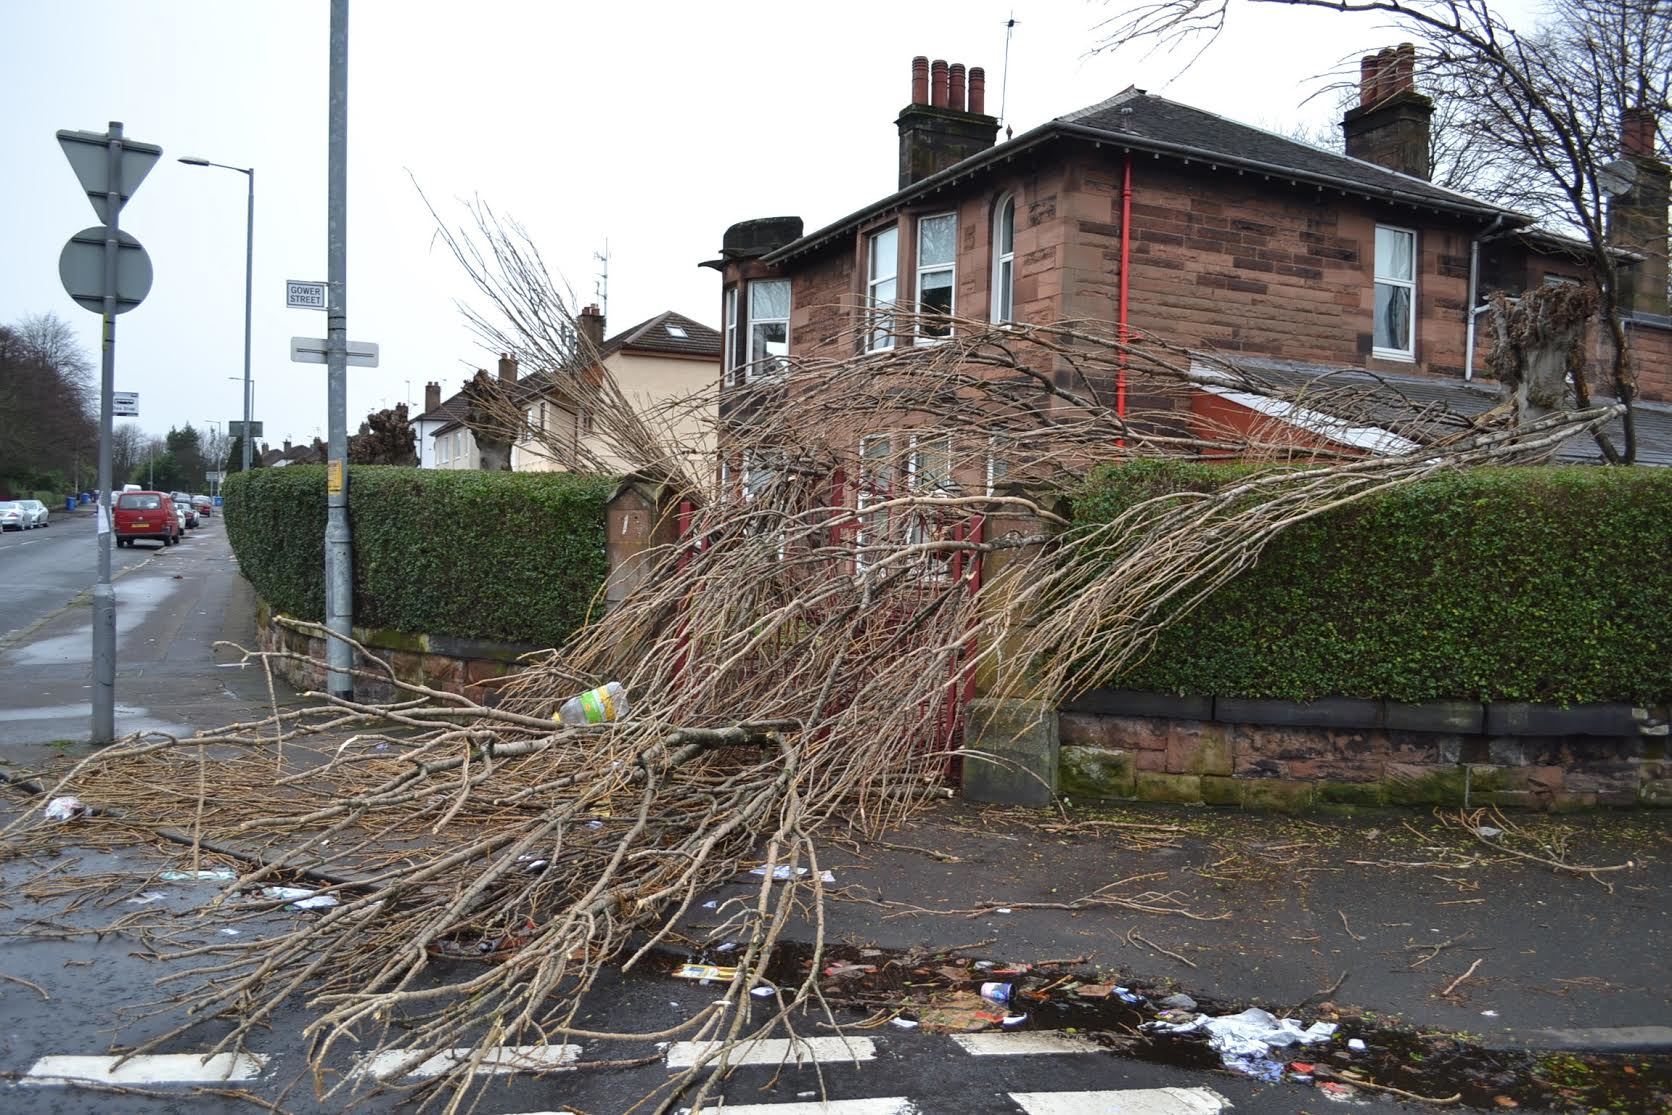 A fallen tree in Glasgow